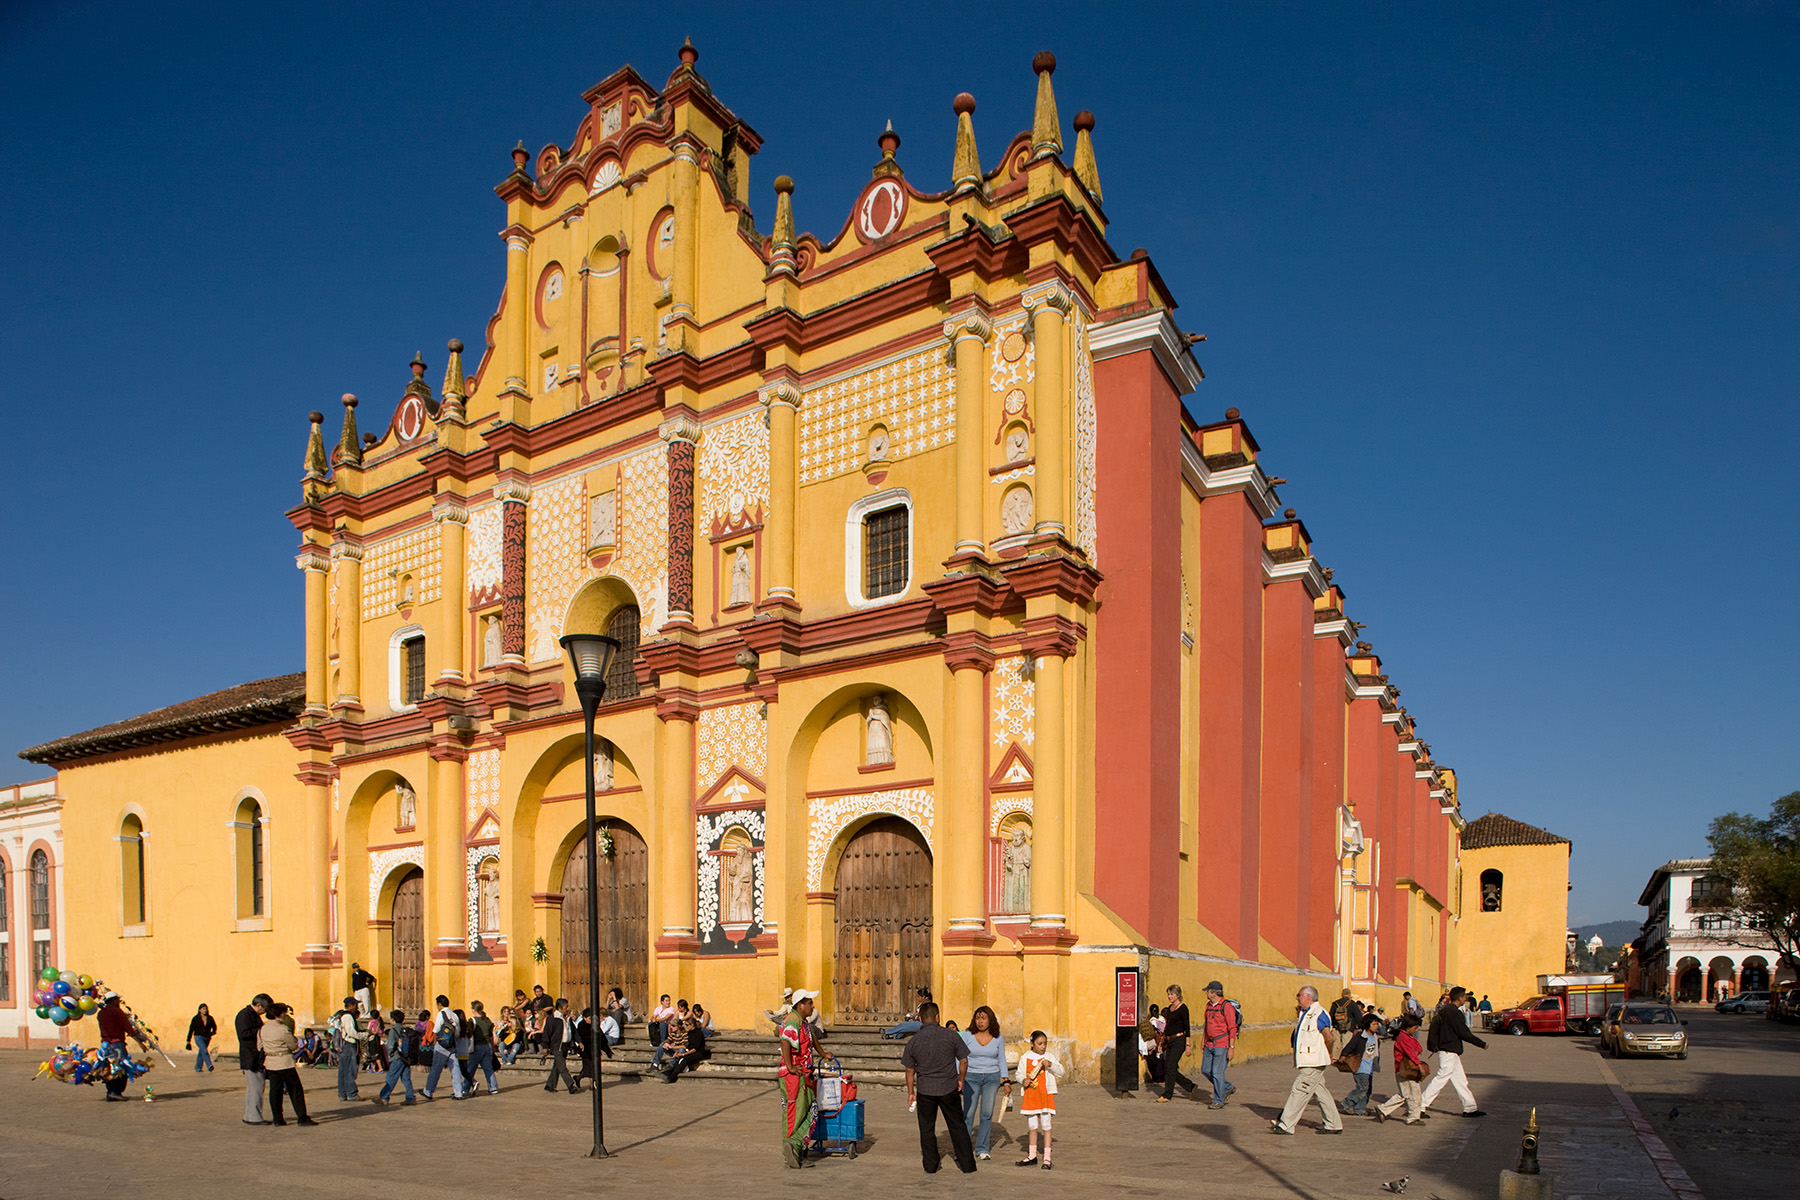 mexico tourism official website